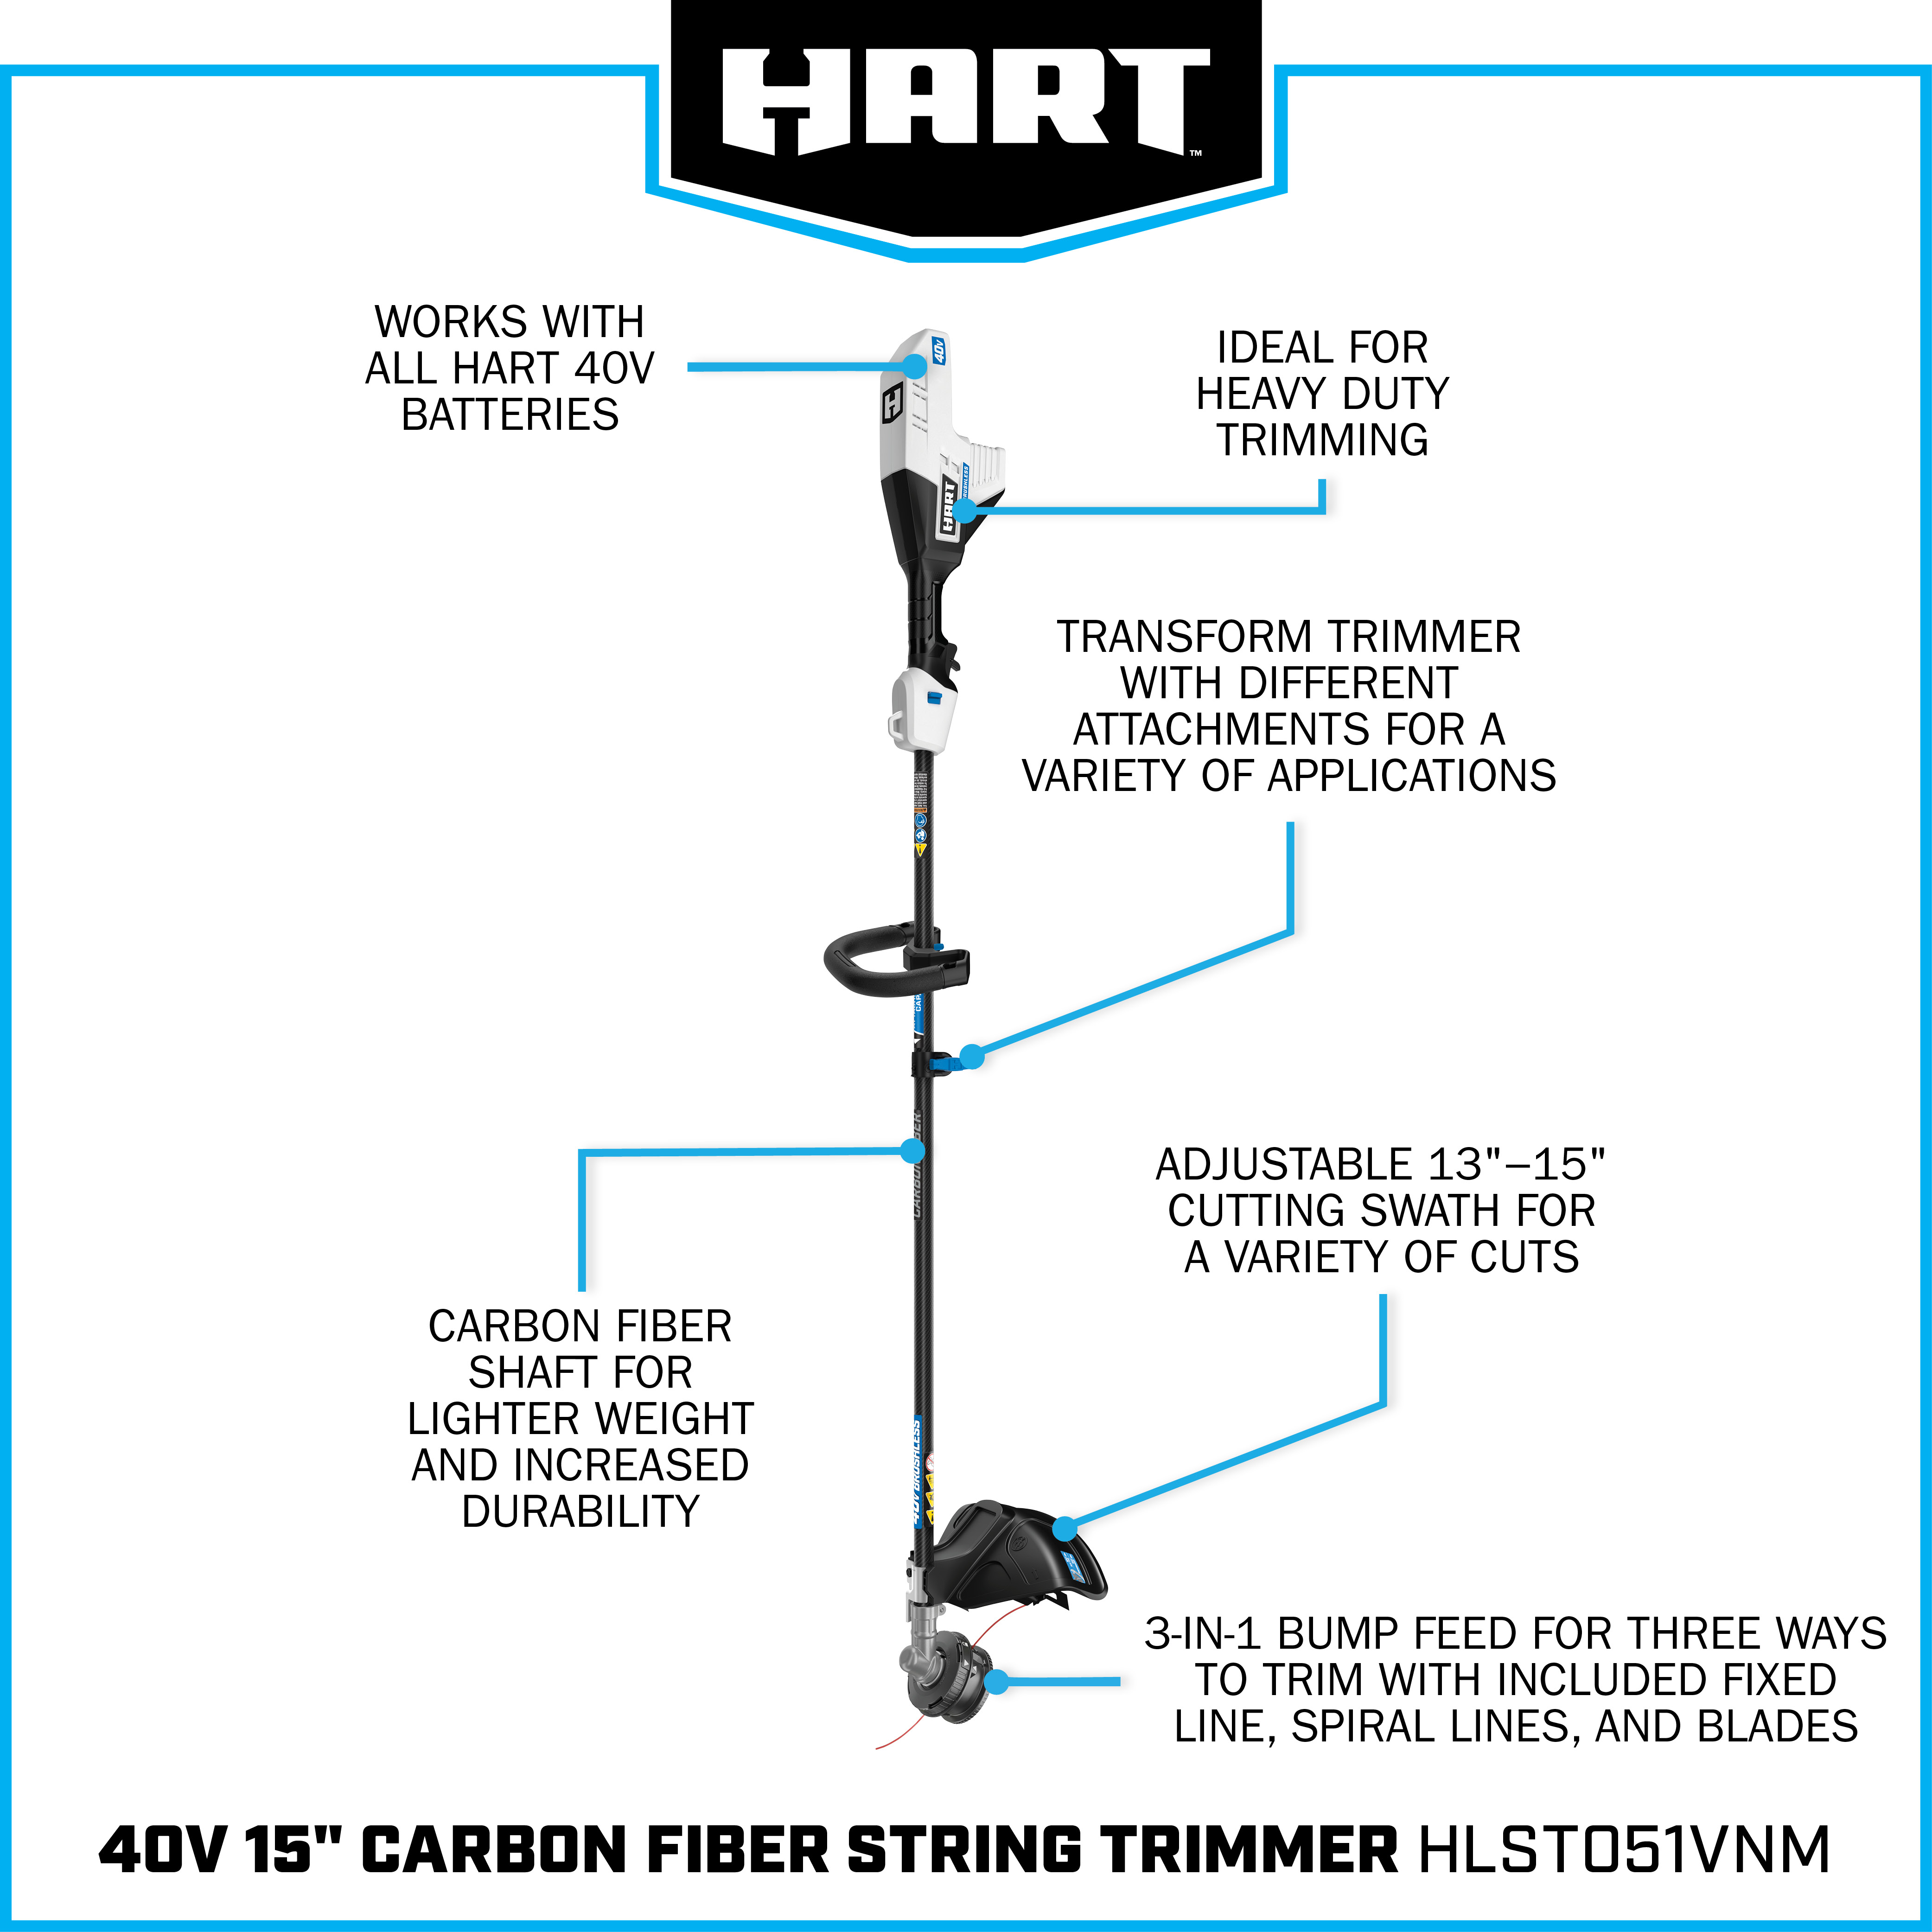 40V Brushless 15" Carbon Fiber String Trimmer - Attachment Capable